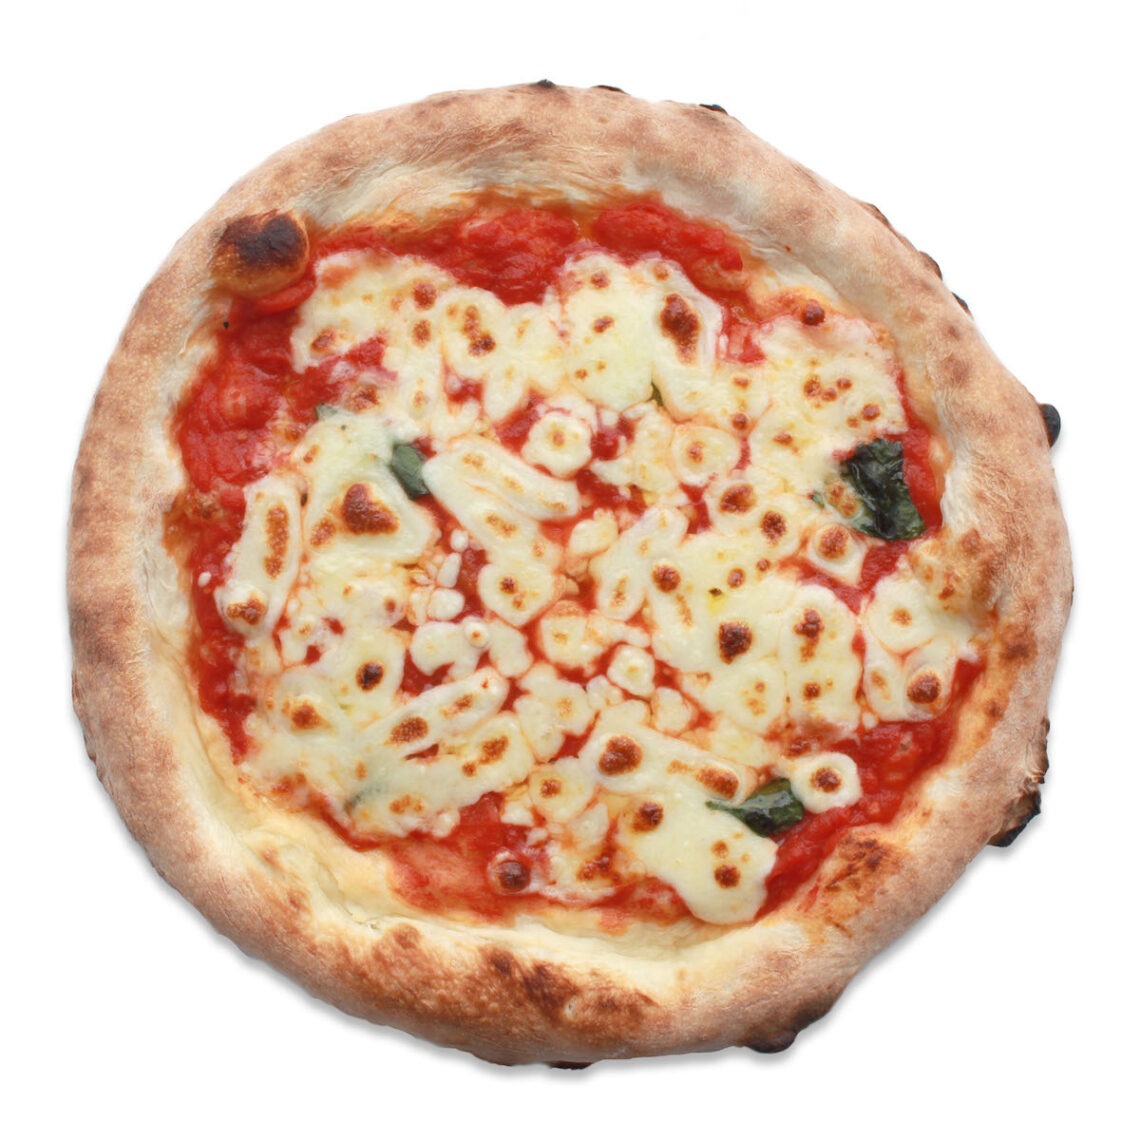 マルゲリータ
Margherita Pizza
1,250 円(税込)